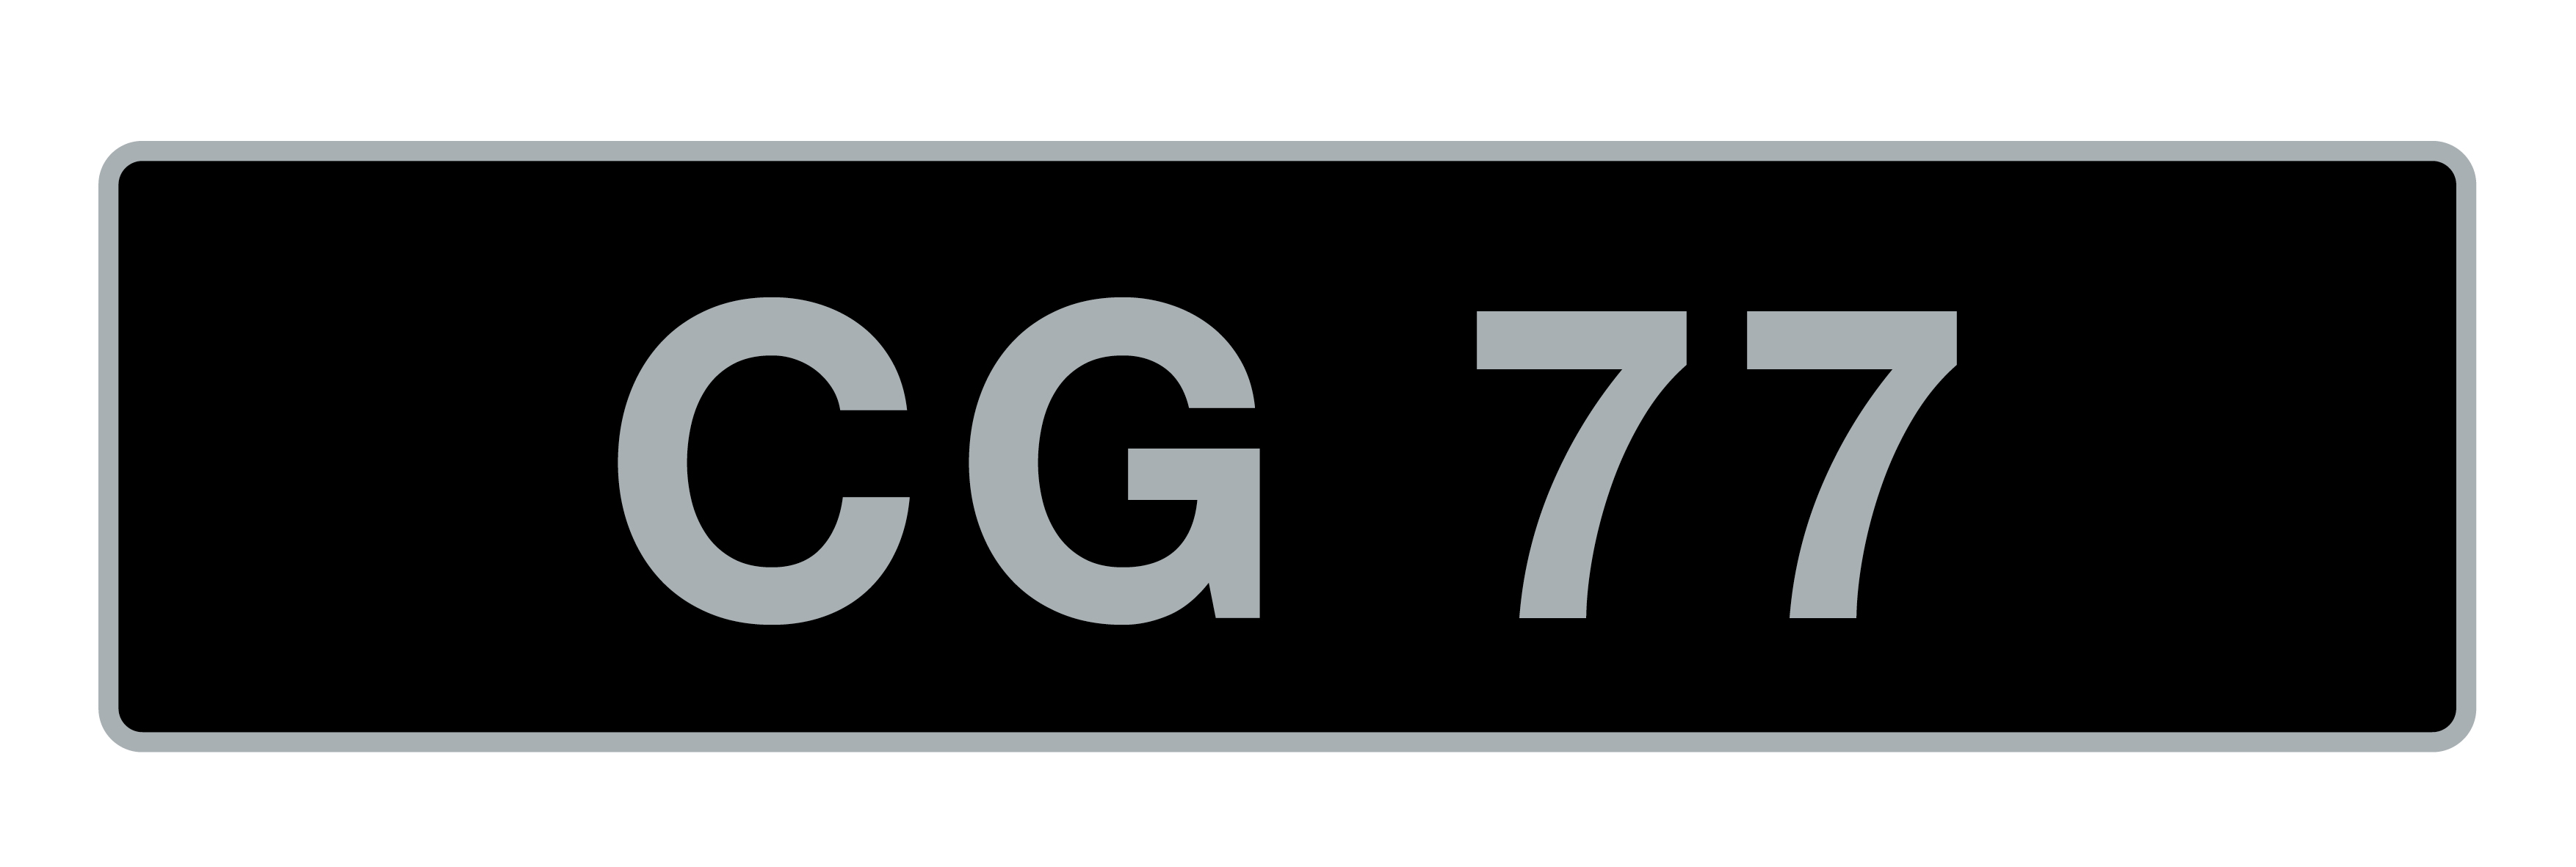 'CG 77' UK Vehicle Registration Number,